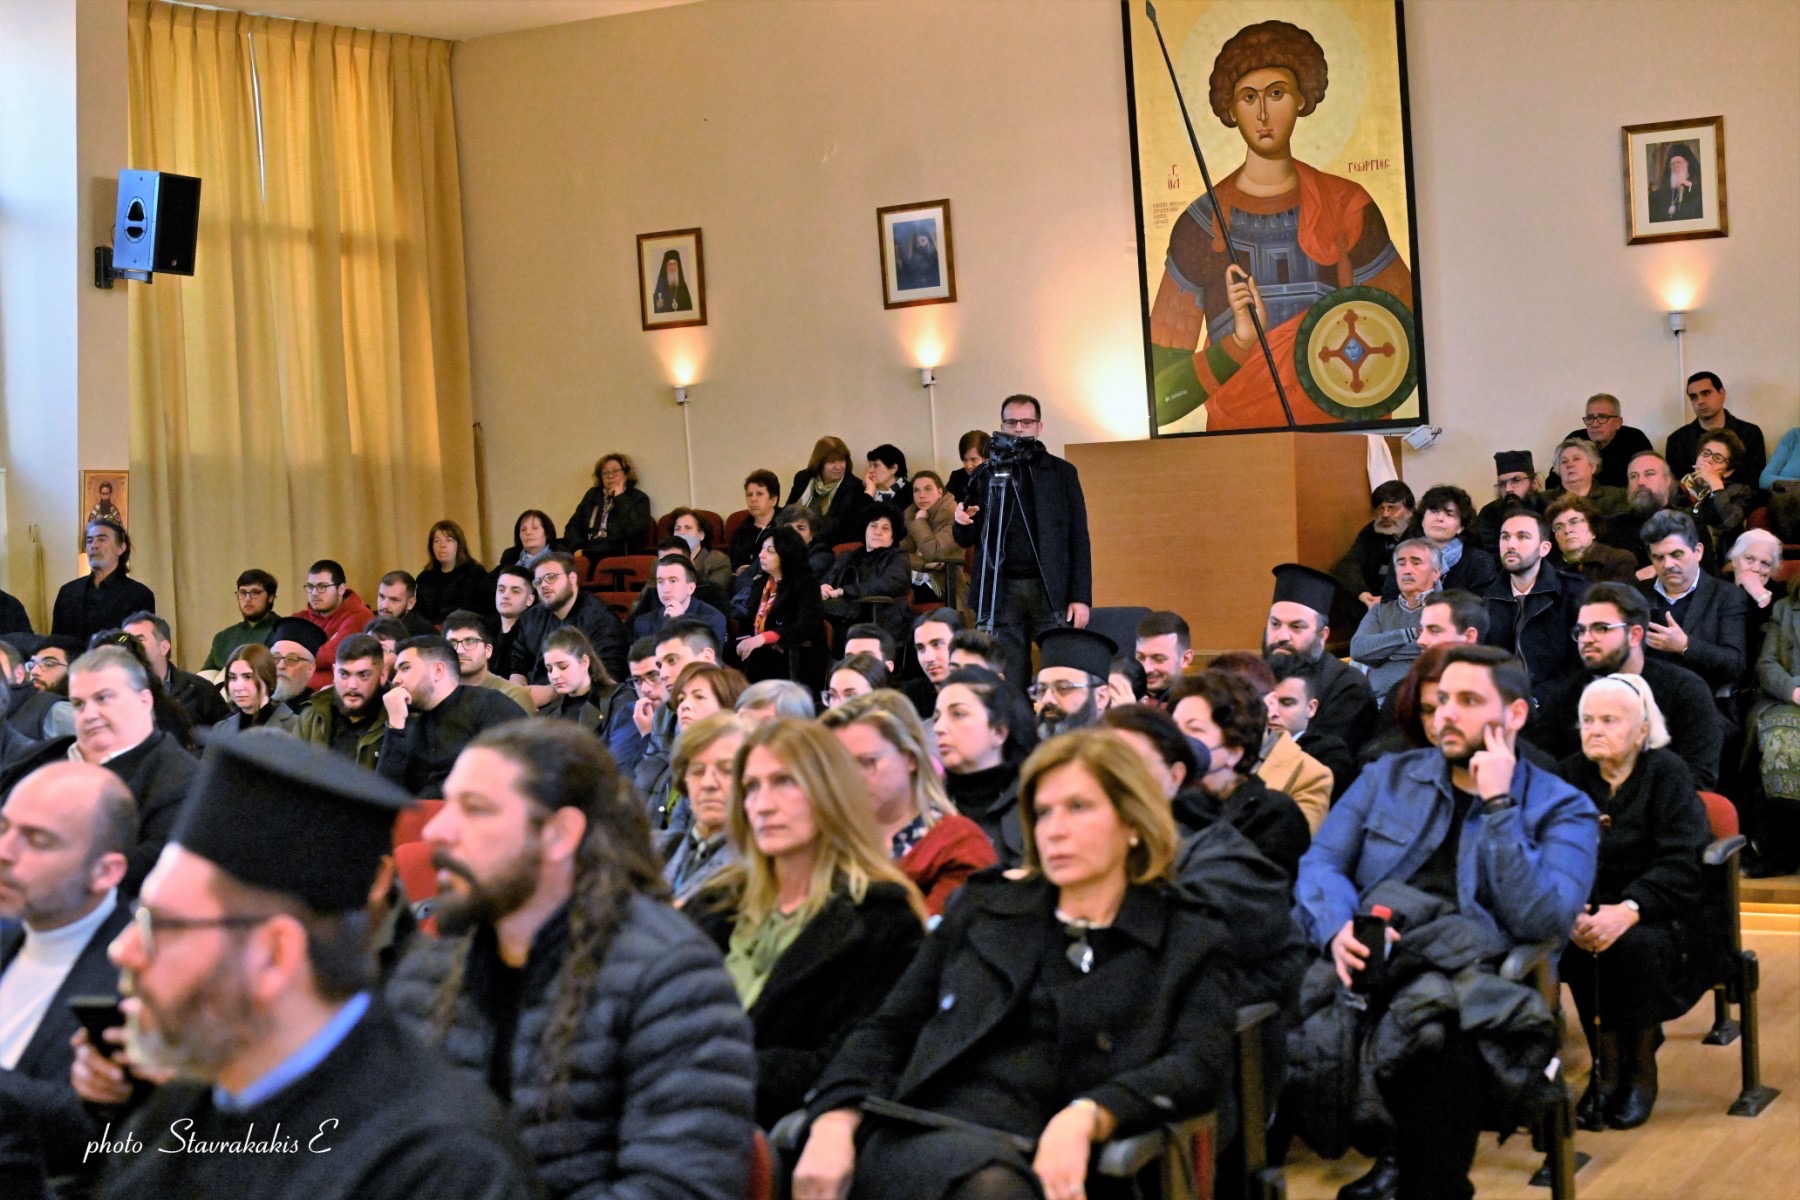 Πλήθος κόσμου στην επερίδα για την Αγιοκατάξη του Πατριάρχη Κωνσταντινοπόλεως Ιερεμία Α